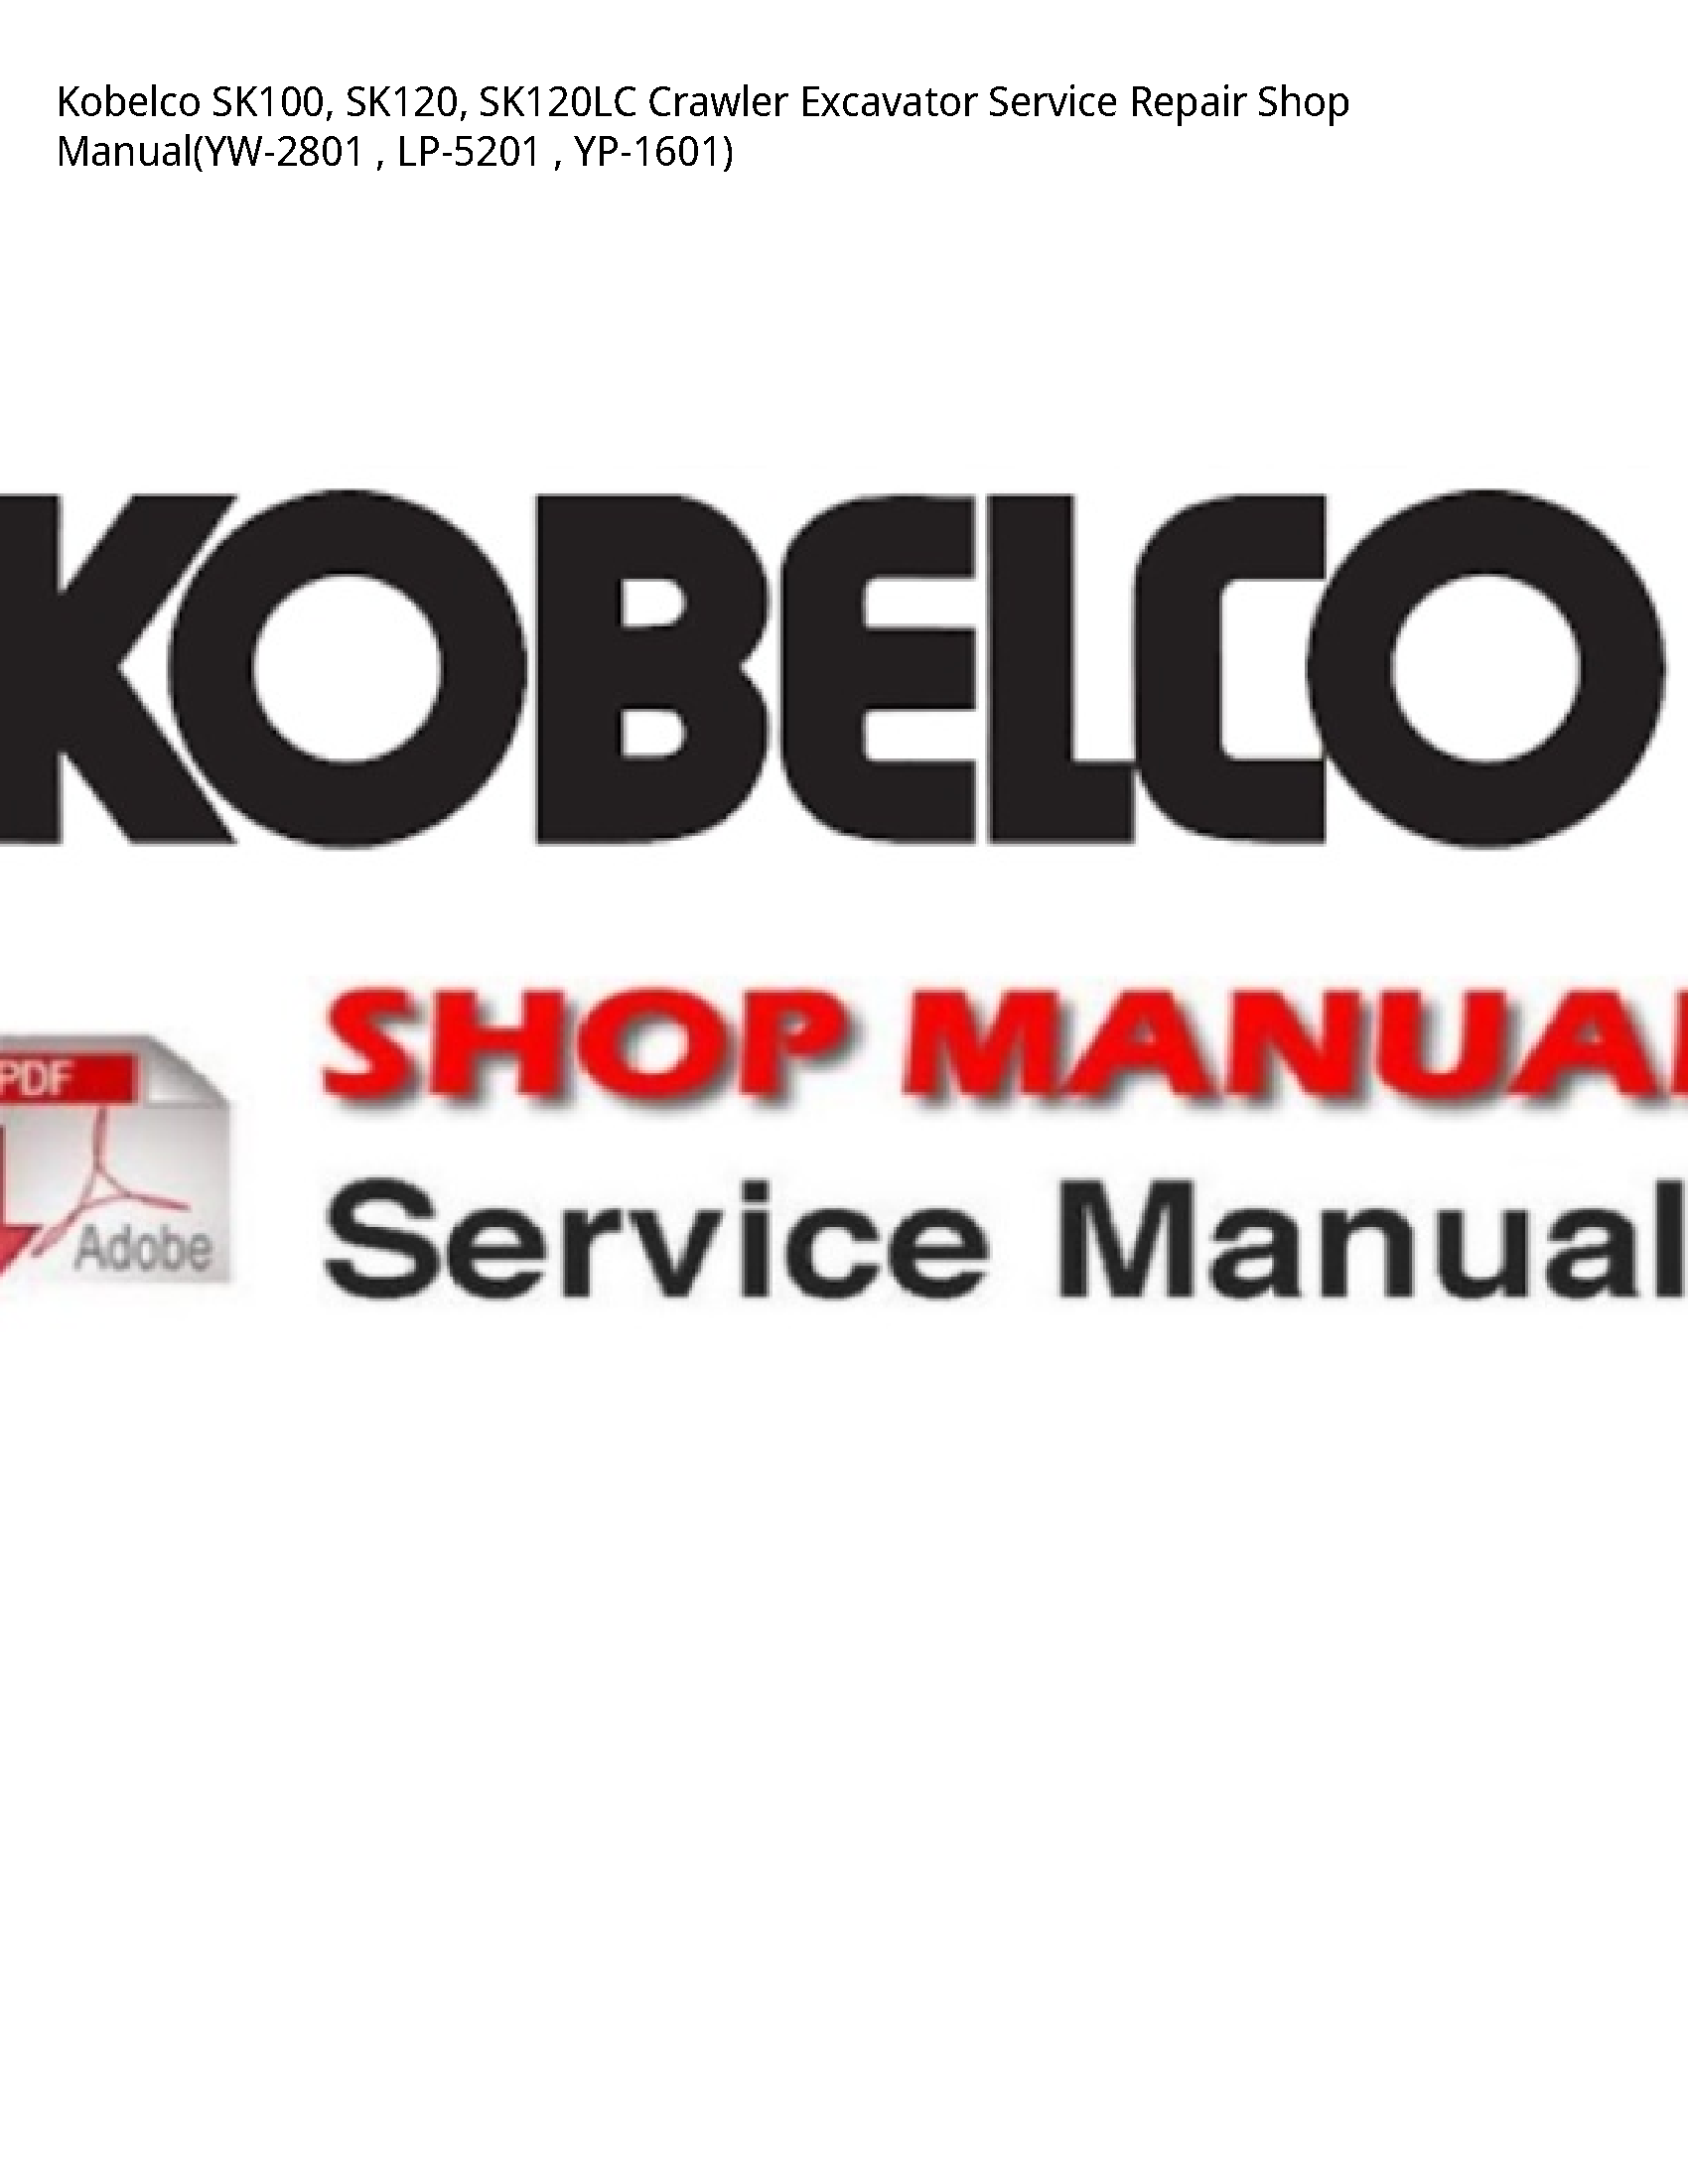 Kobelco SK100 Crawler Excavator manual